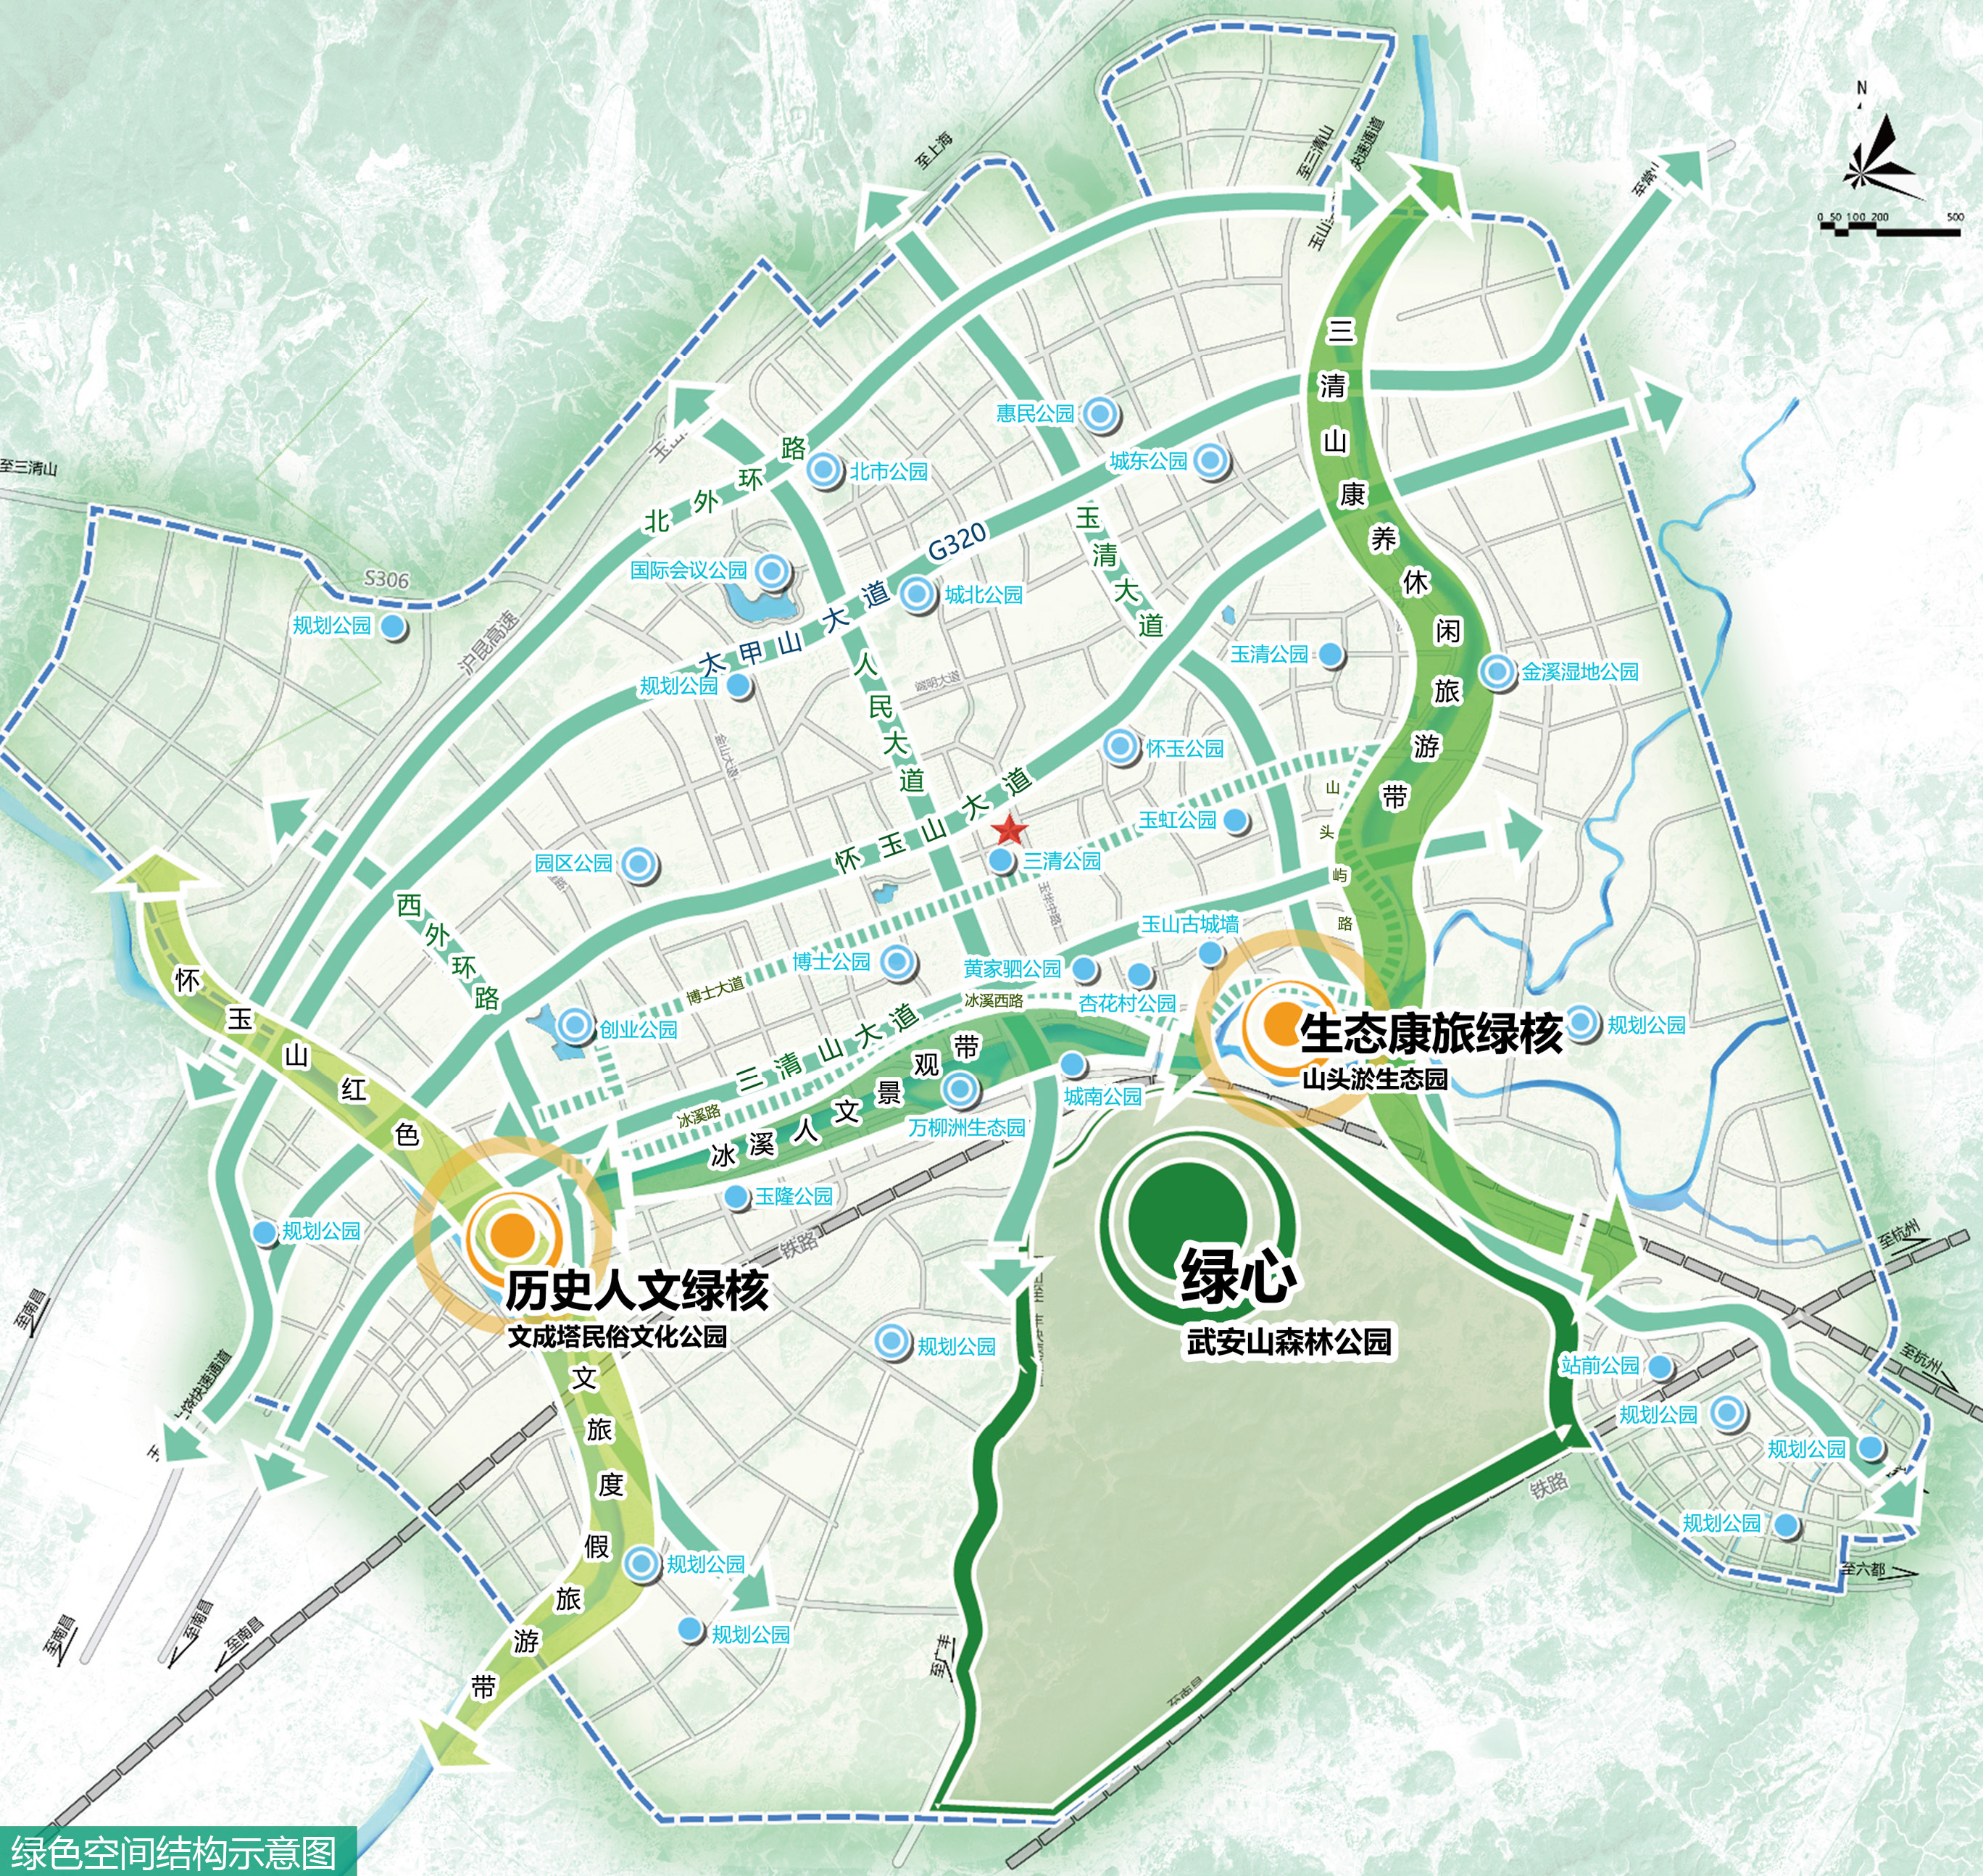 城市绿廊规划设计——玉山县城市绿廊规划设计